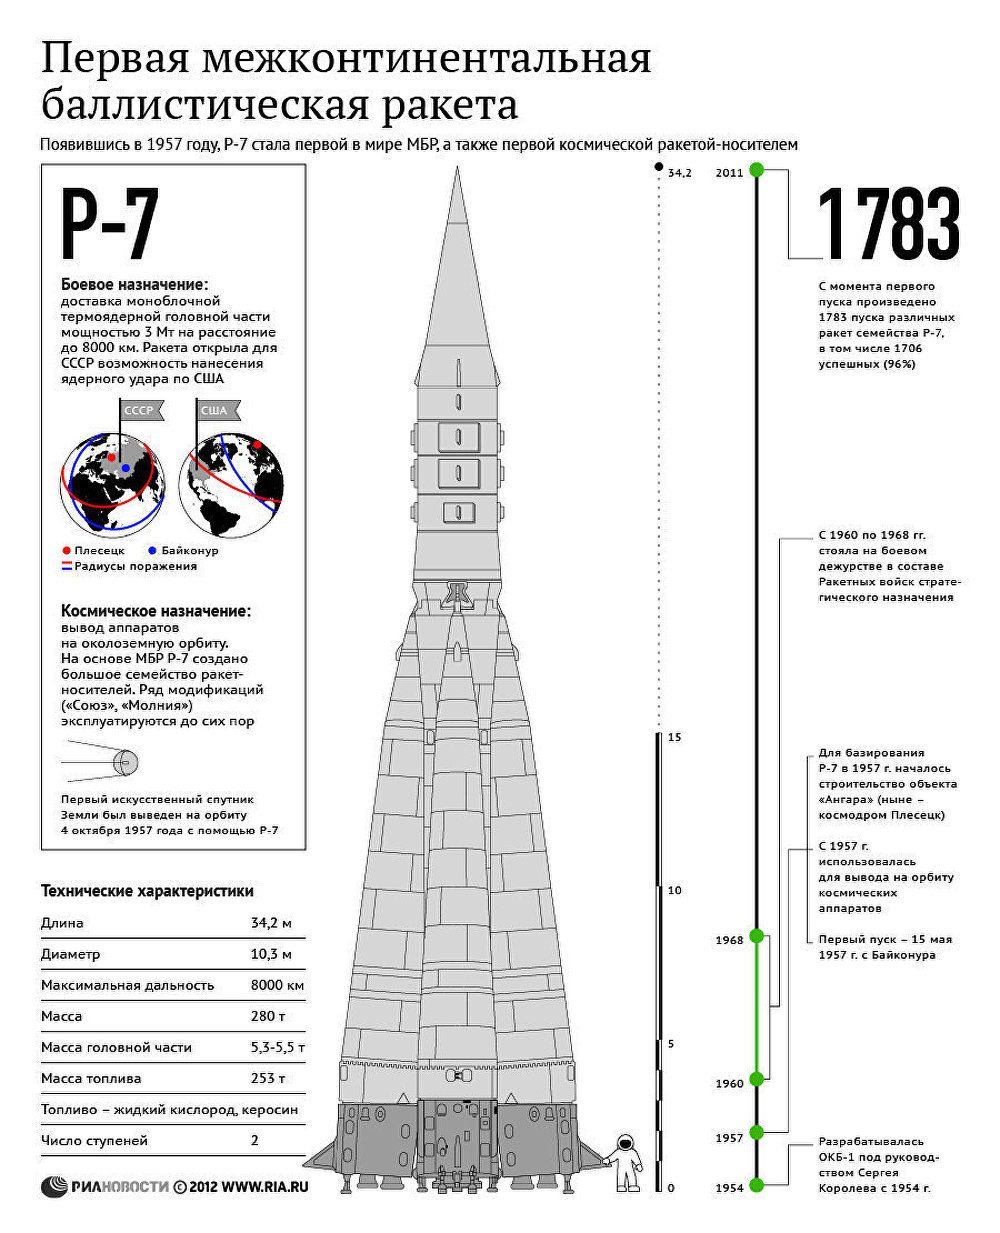 Р-7 - первая межконтинентальная баллистическая ракета